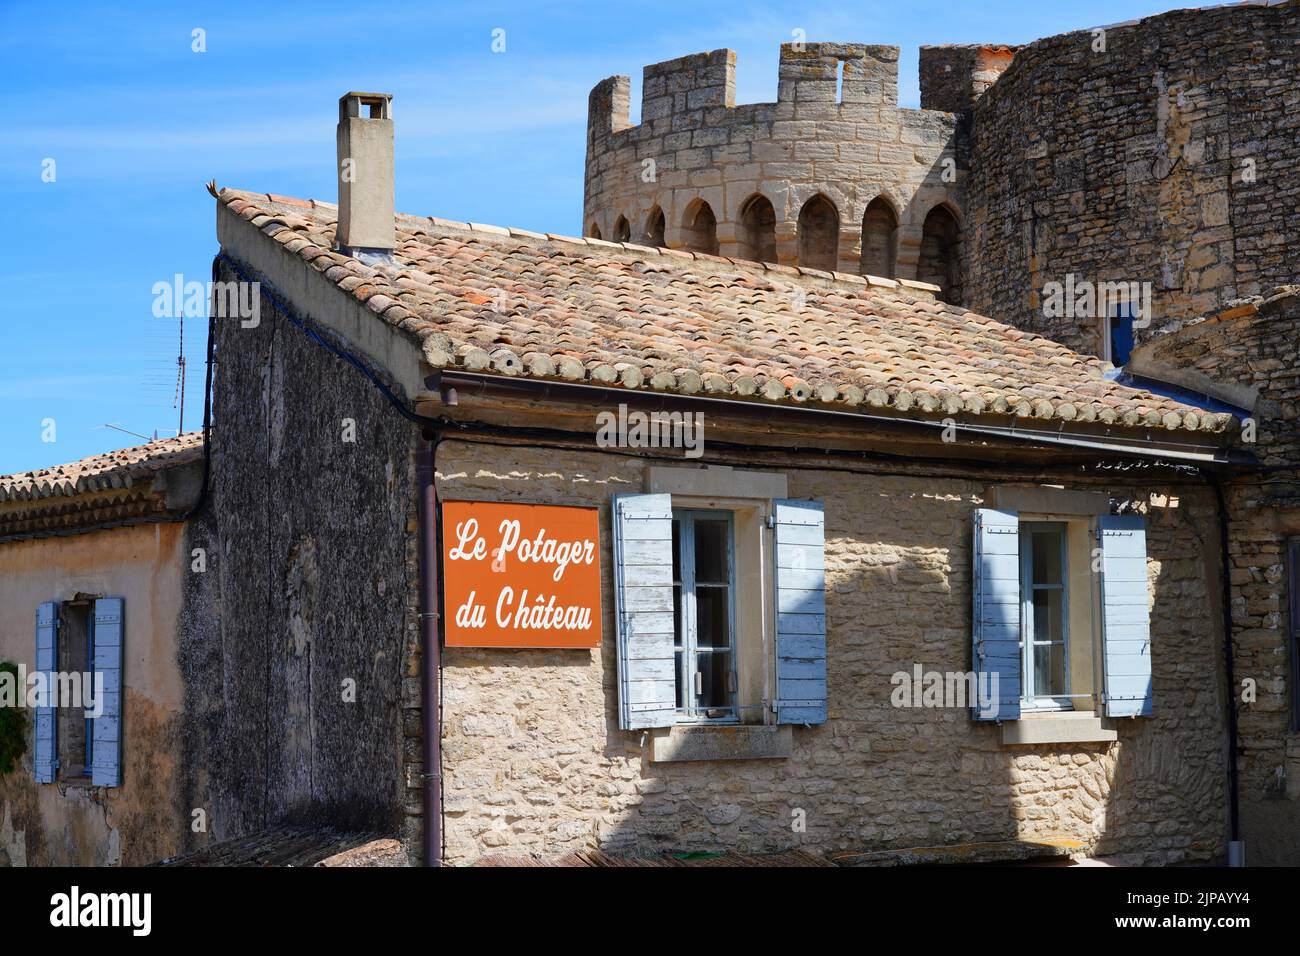 GORDES, FRANCIA -1 JUL 2021- Vista del Chateau de Gordes, un castillo medieval de referencia en el pueblo encaramado de Gordes en la zona de Luberon de Vaucluse Foto de stock